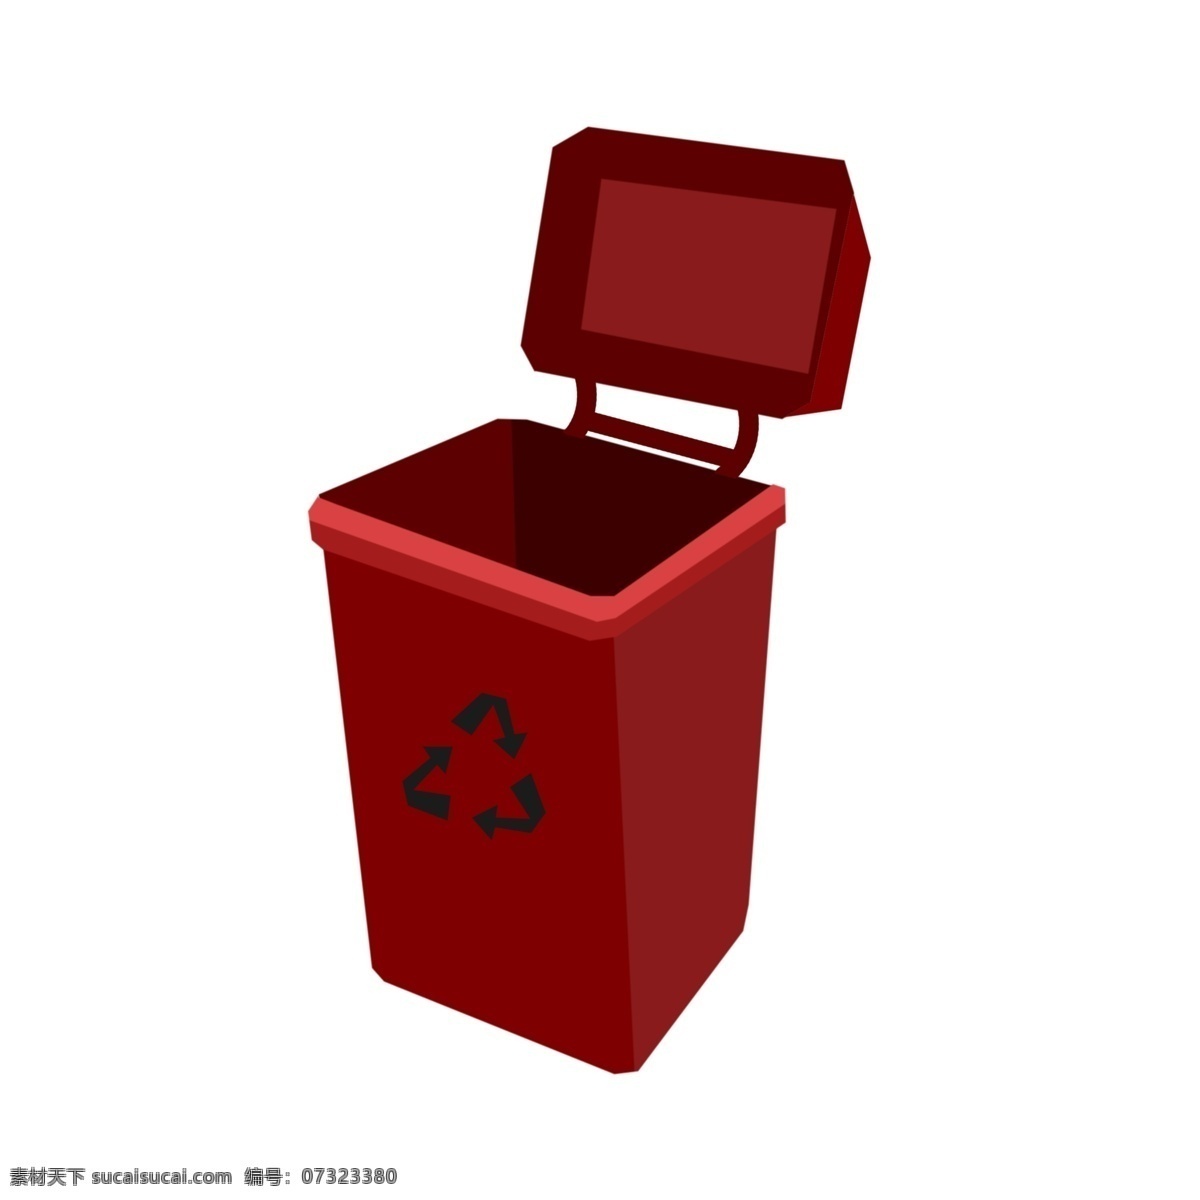 红色 垃圾桶 手绘 插画 红色的垃圾桶 黑色 循环 箭头 漂亮的垃圾桶 手绘垃圾桶 环保垃圾桶